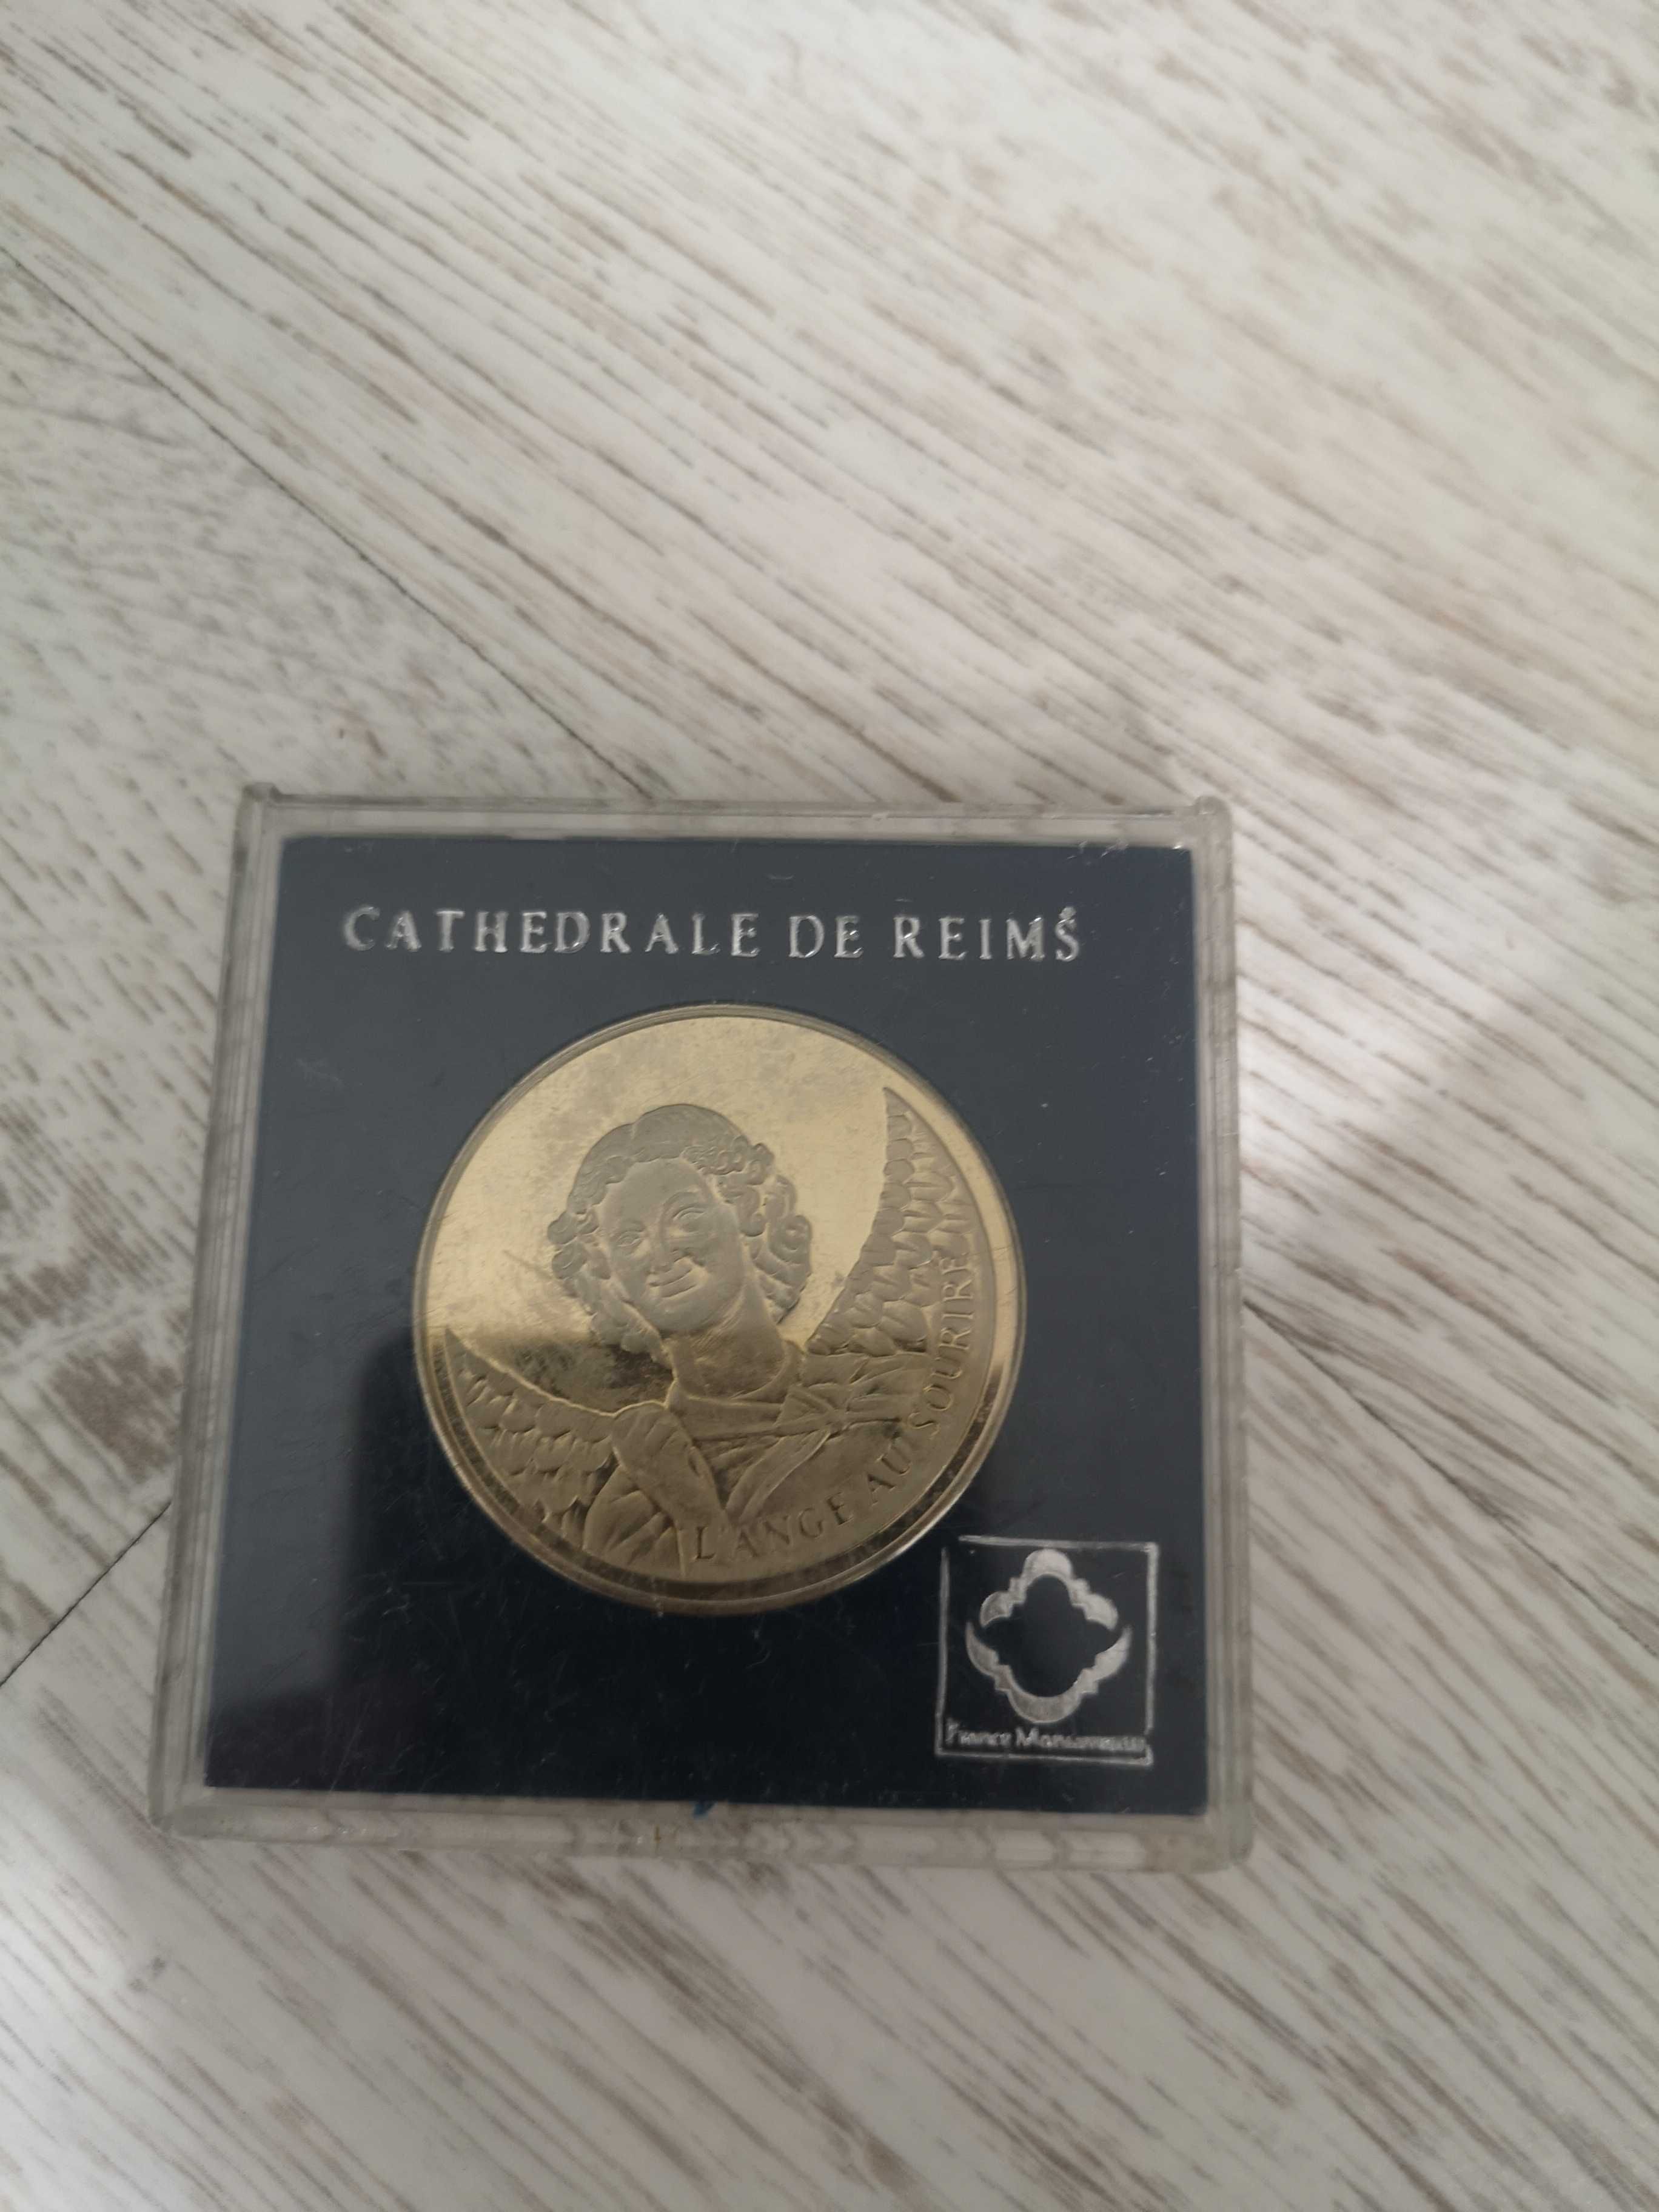 Cathedrale Notre Dame De Reims moneta